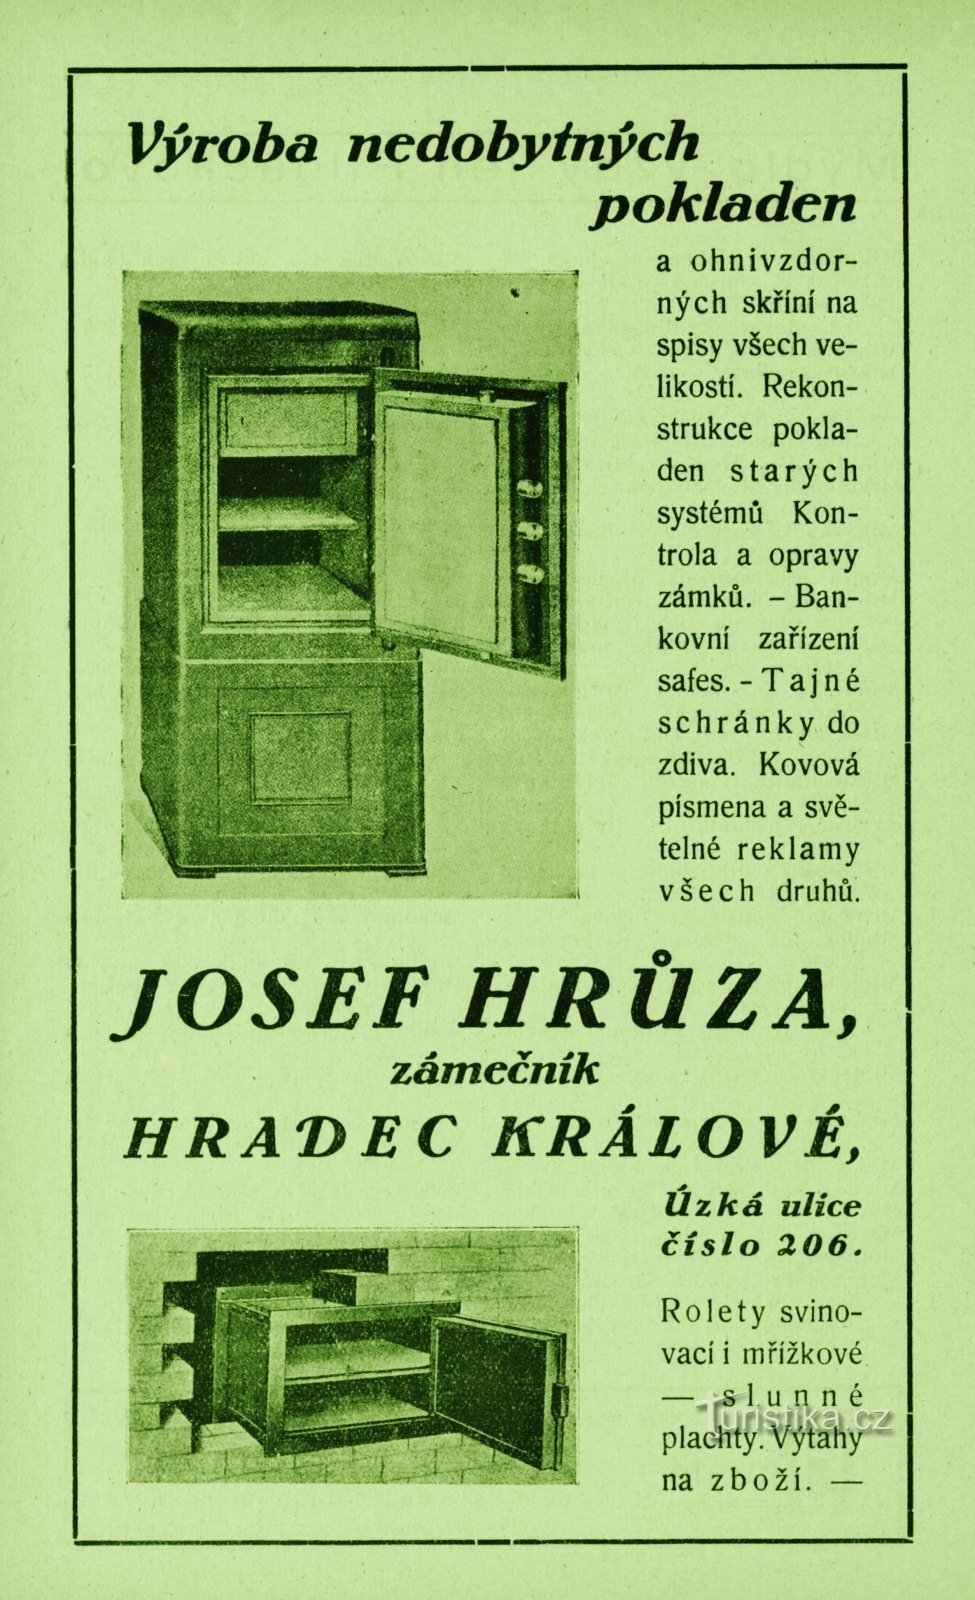 Pubblicità contemporanea del laboratorio di fabbro di Josef Hrůza del 1931